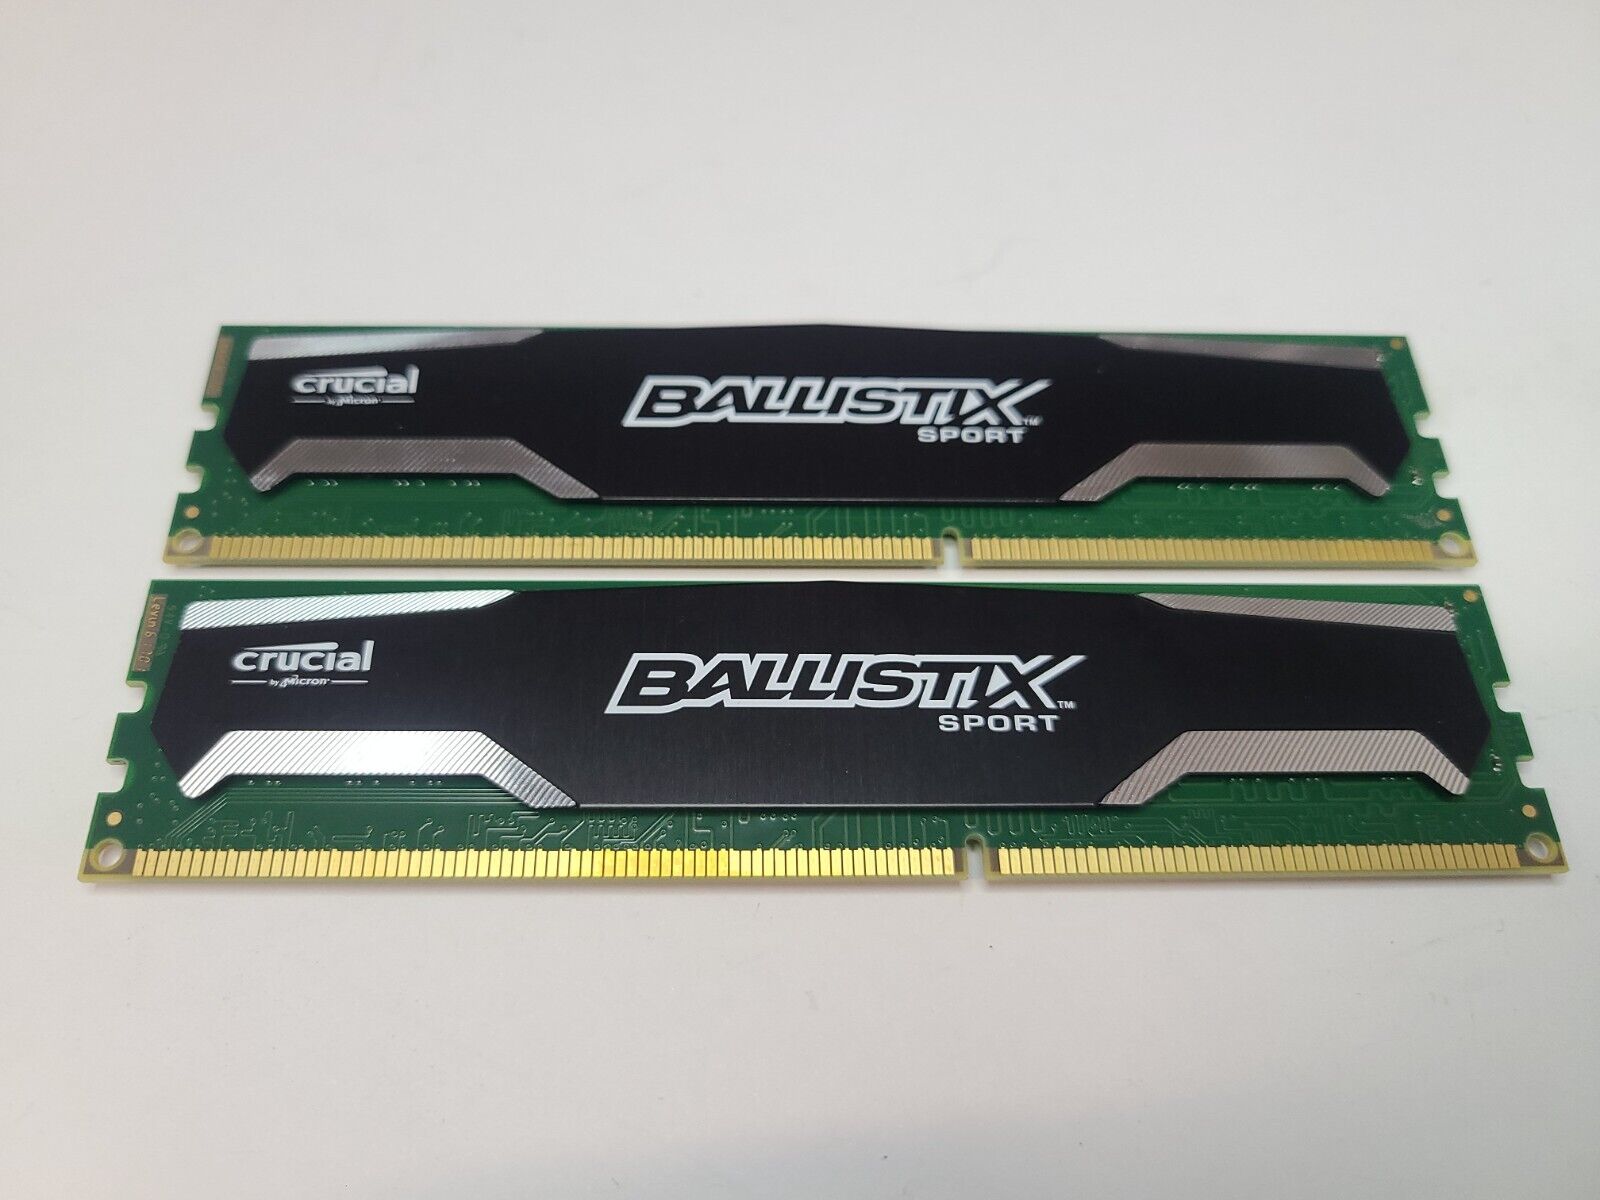 Crucial Ballistix Sport 16GB (2x8GB) DDR3 1600MHz Desktop Ram Memory | Tested